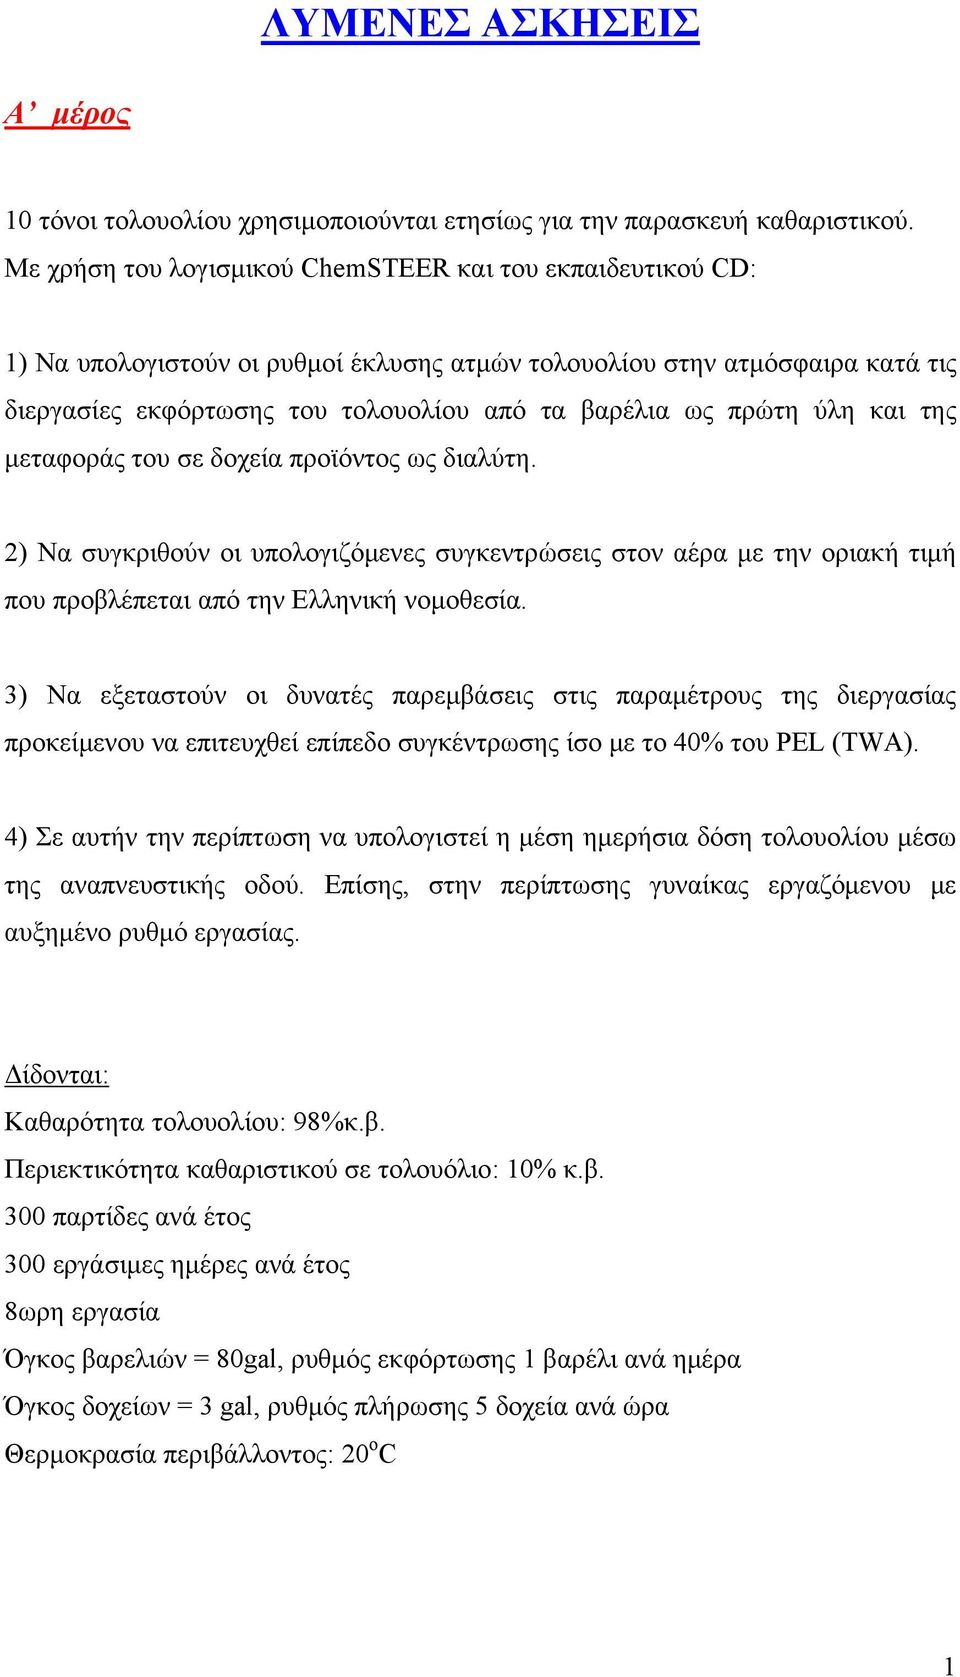 ύλη και της μεταφοράς του σε δοχεία προϊόντος ως διαλύτη. 2) Να συγκριθούν οι υπολογιζόμενες συγκεντρώσεις στον αέρα με την οριακή τιμή που προβλέπεται από την Ελληνική νομοθεσία.